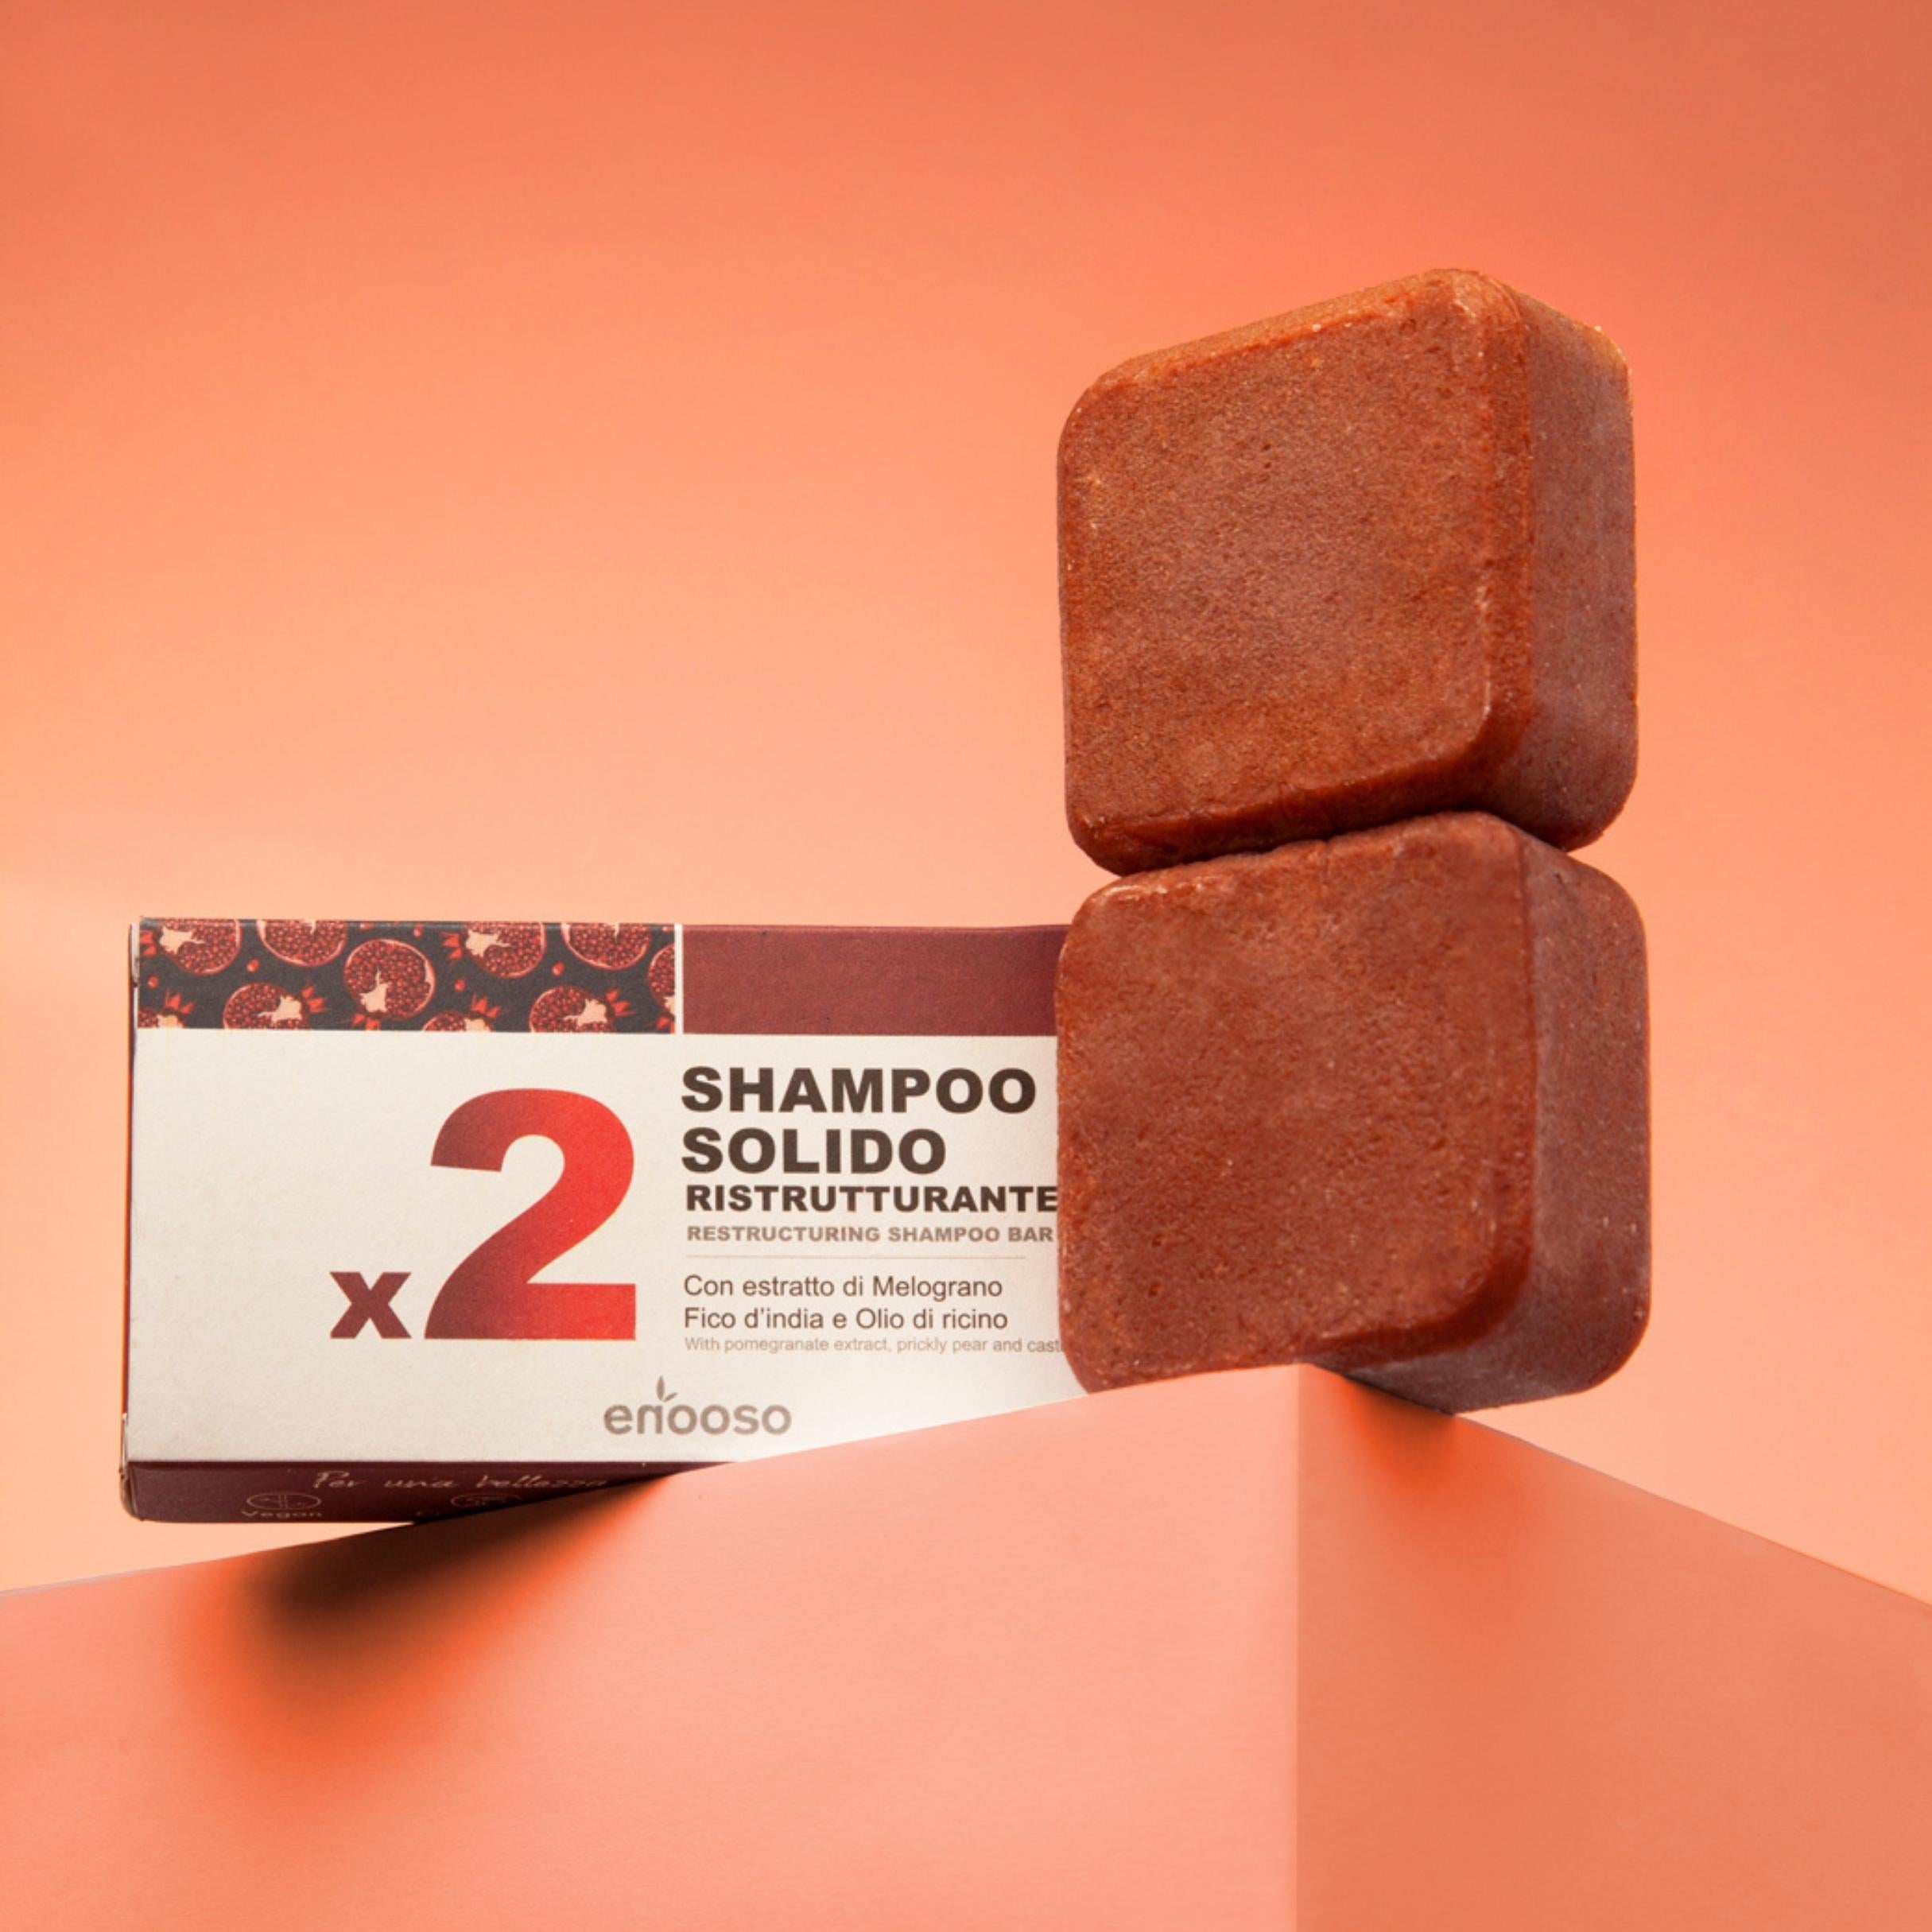 Shampoo Solido x2 - Ristrutturante